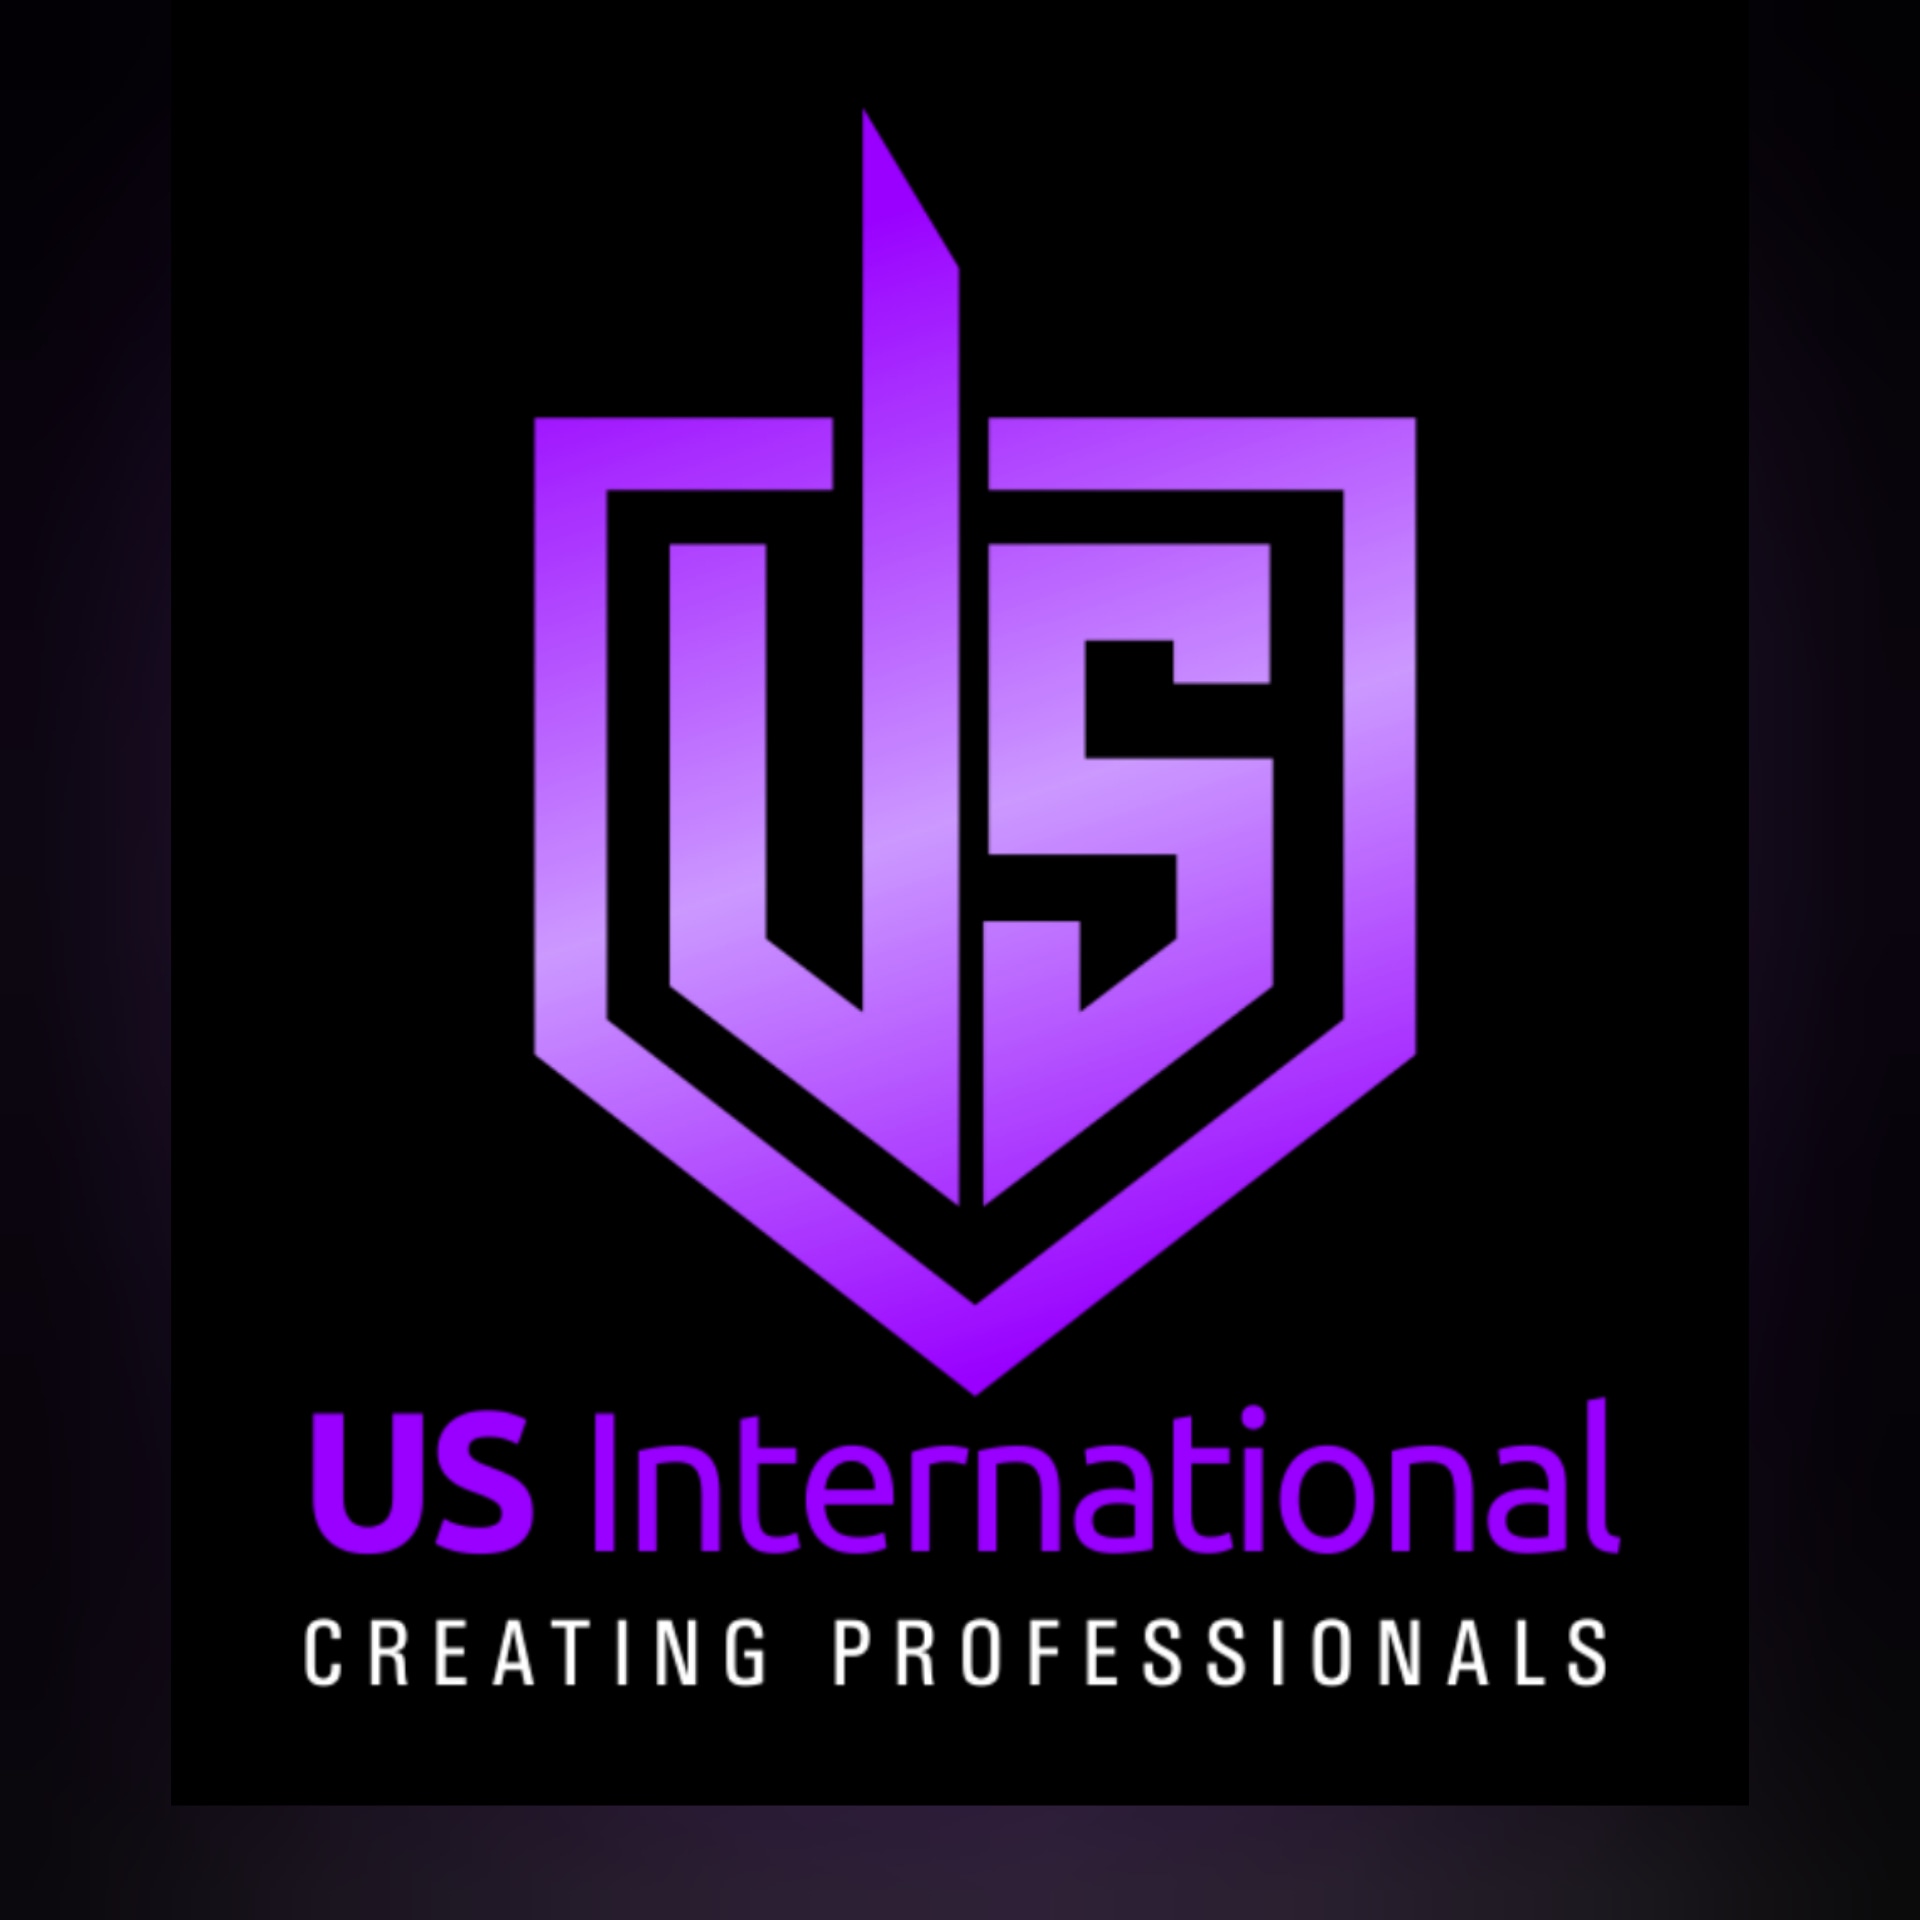 US International Beauty School logo